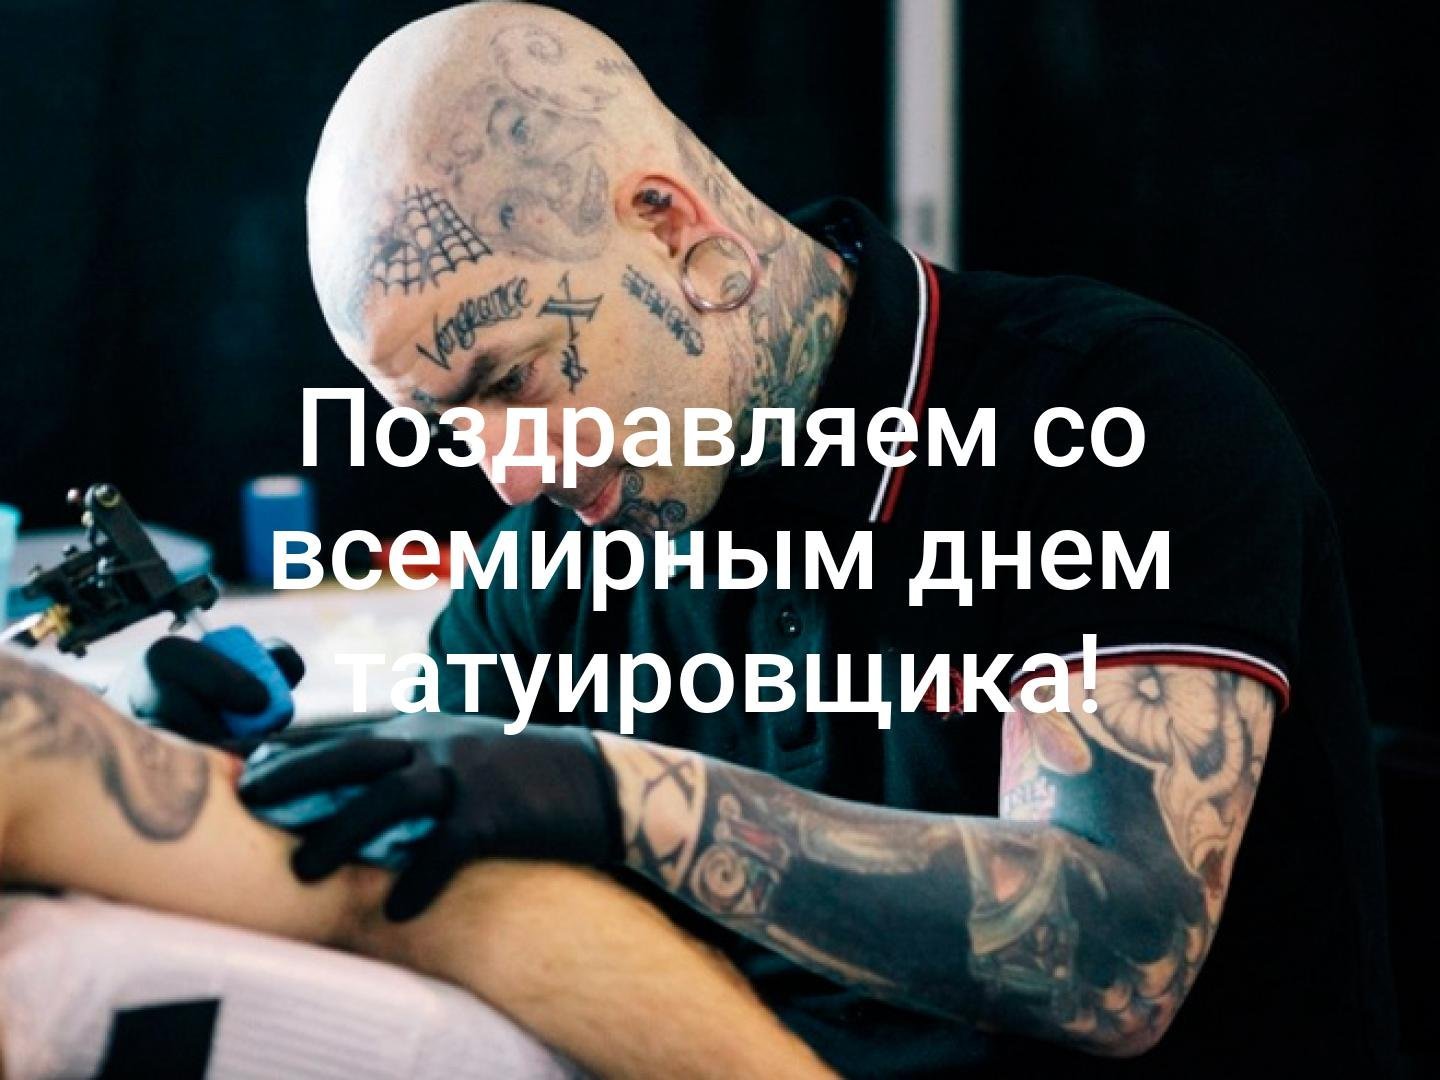 Всемирный день татуировки. Всемирный день татуировщика. День тату мастера. Поздравляю с днем татуировщика. С днём рождения татуировщику.